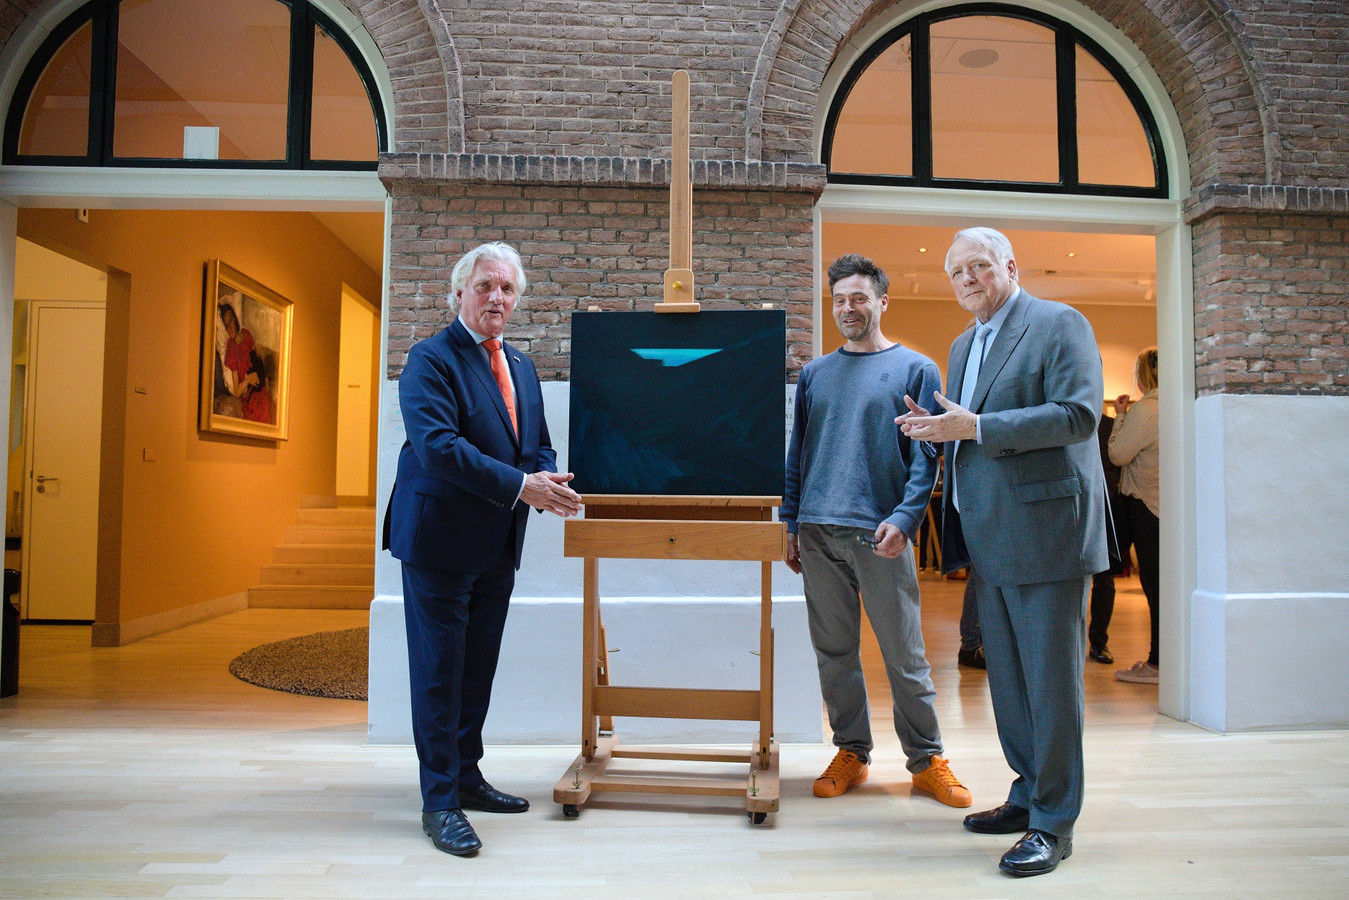 De onthulling van het schilderij van Robert Zandvliet, Zonder titel (2021). Op de foto: Peter Schoon, Robert Zandvliet en Ben Knüppe.